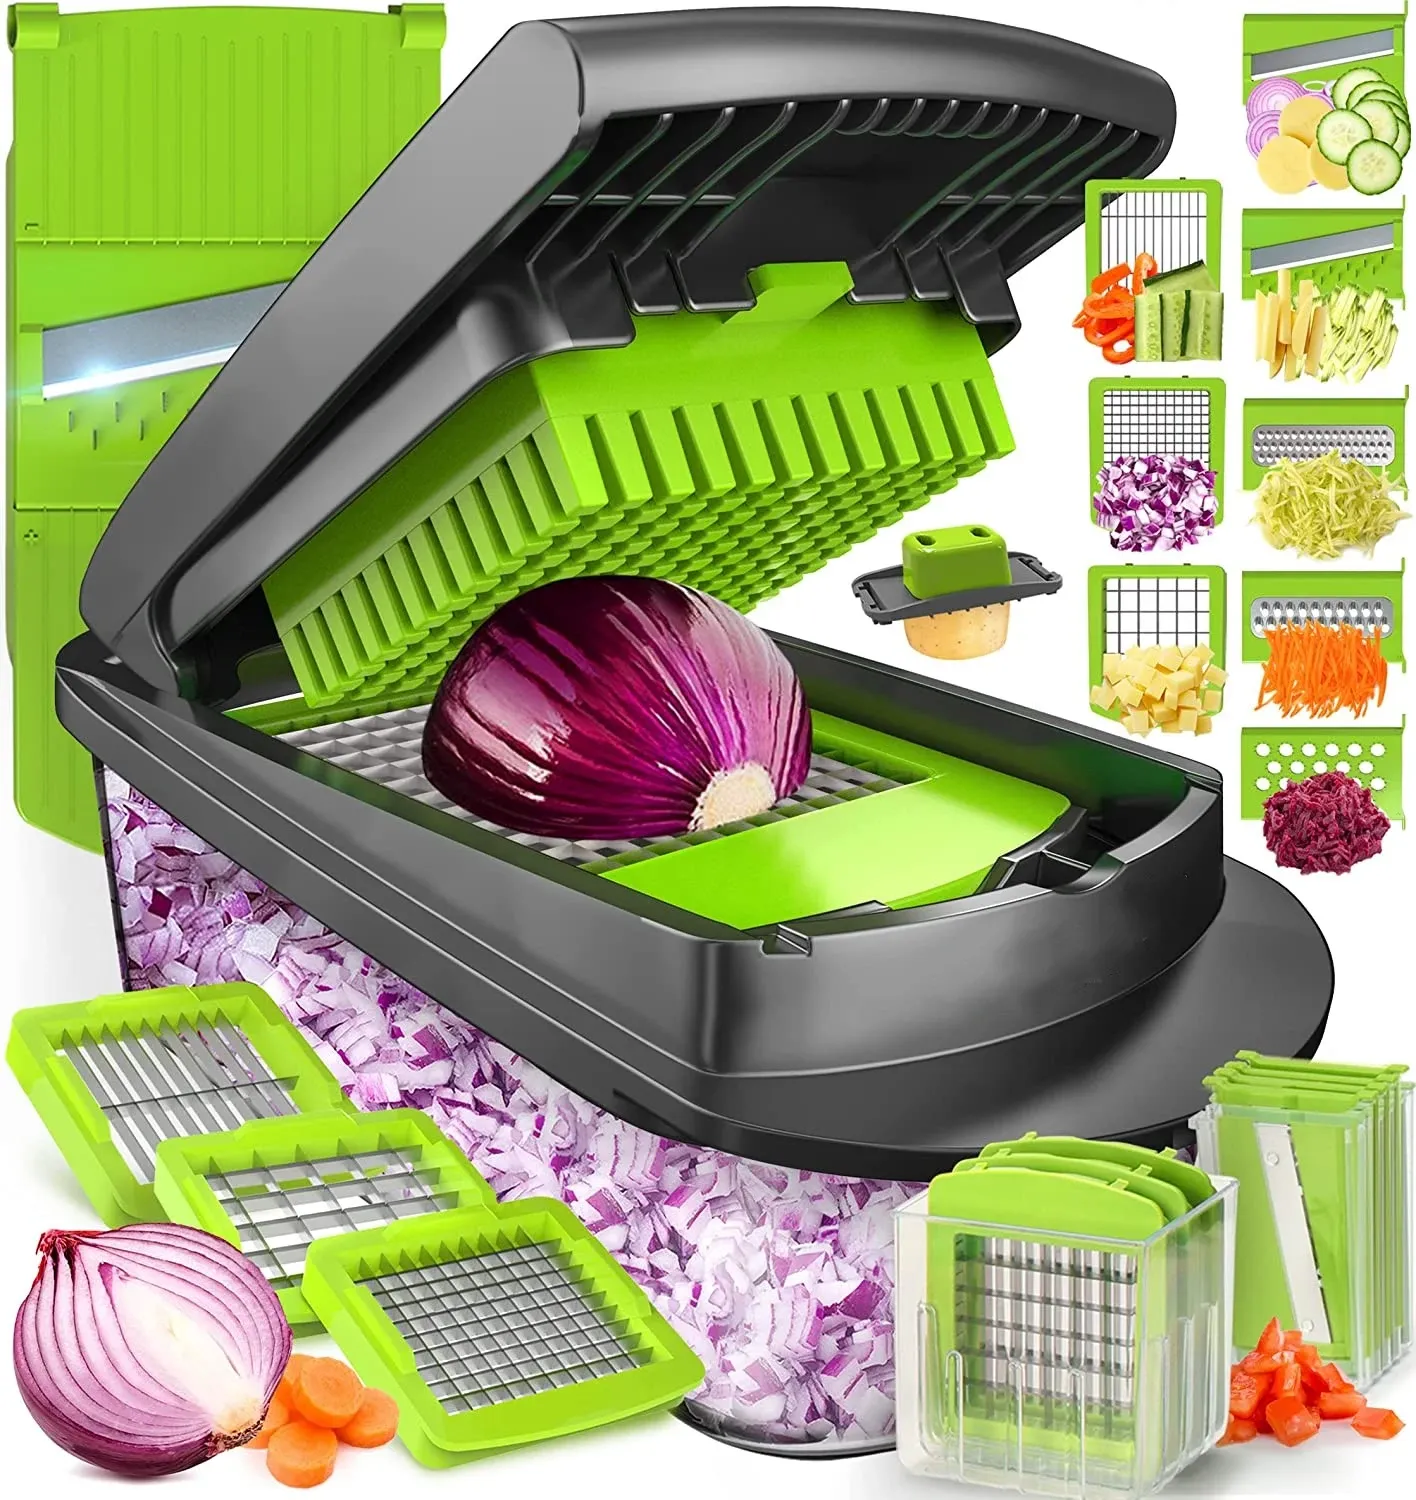 10-in-1, 8 Blade Vegetable Slicer, Onion Mincer Chopper, Vegetable Chopper, Cutter, Dicer, Egg Slicer with Container